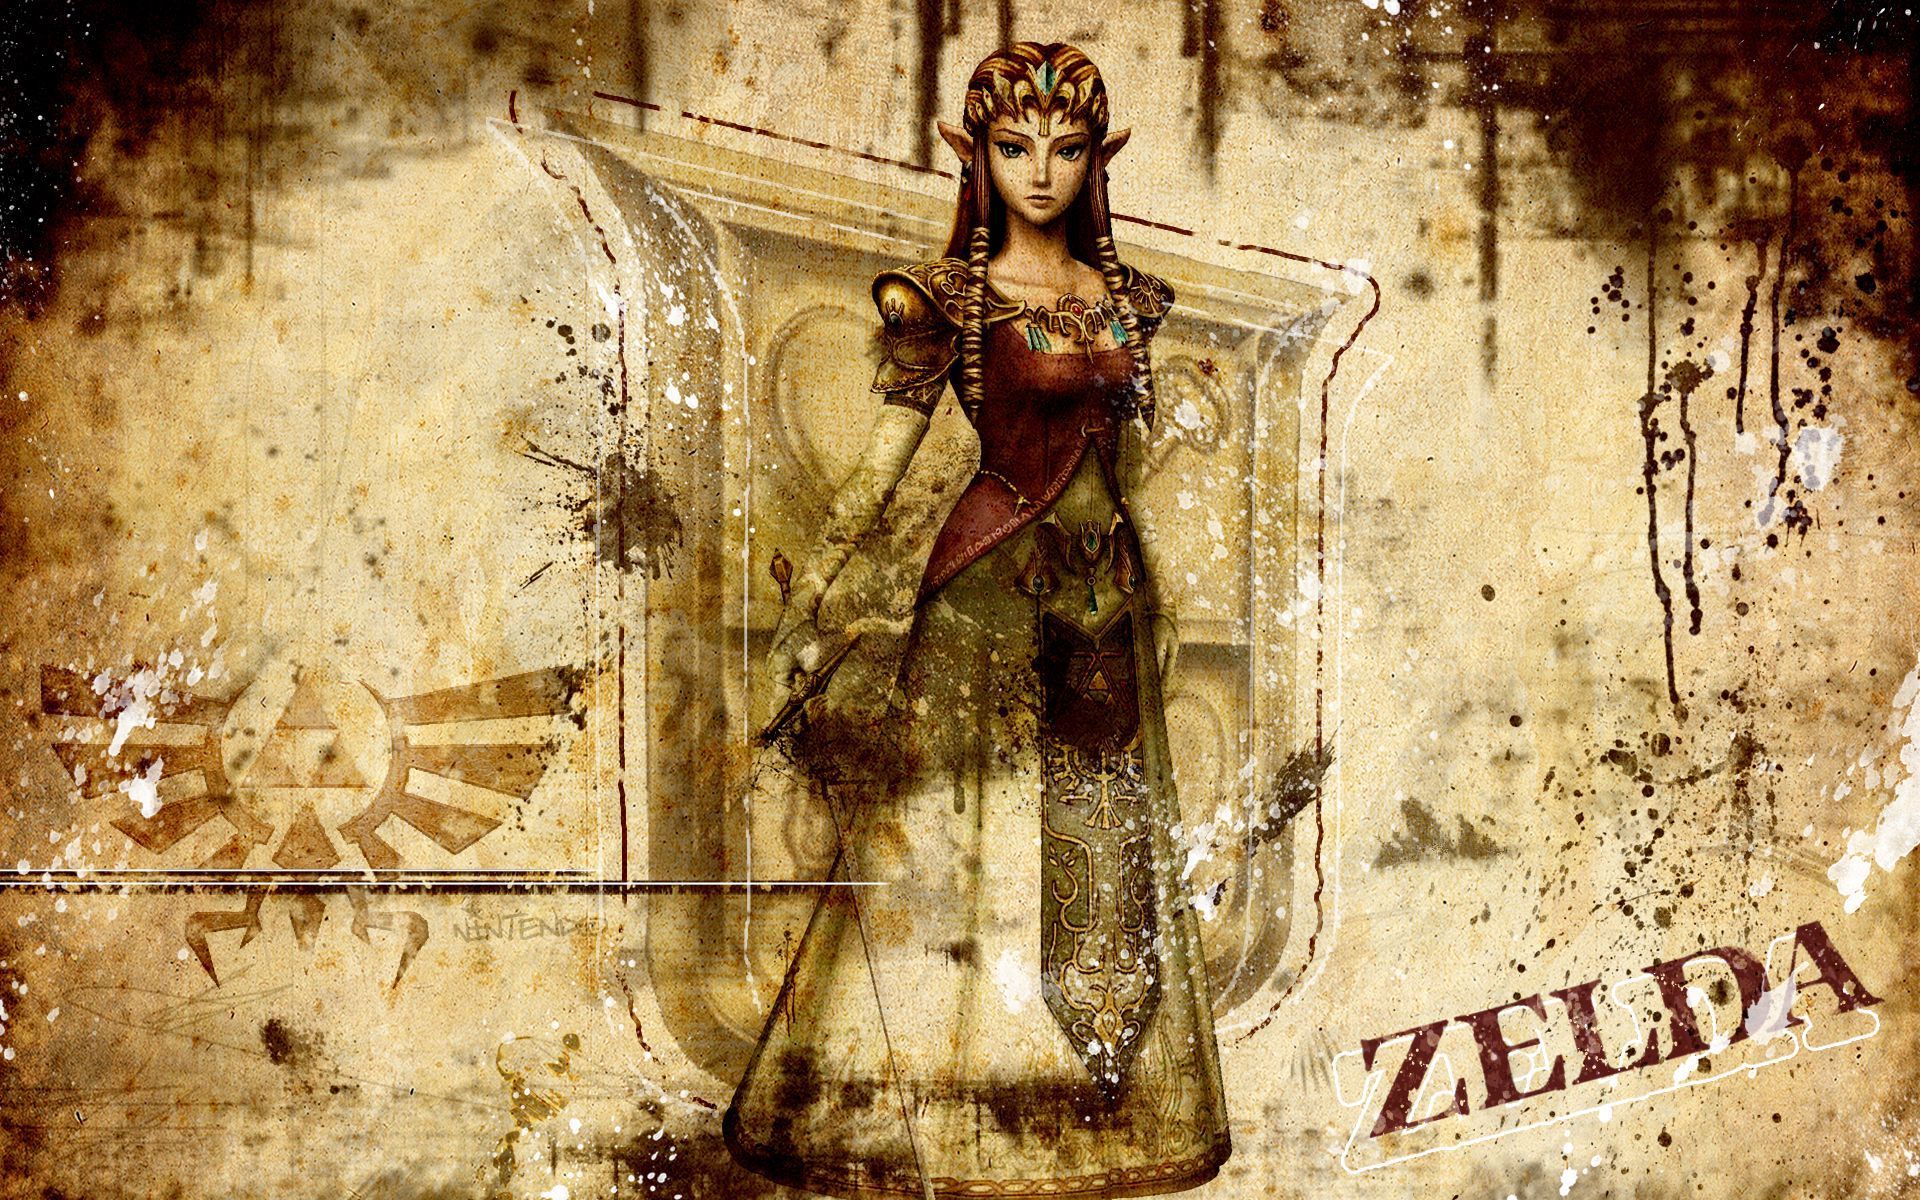 Zelda-the-legend-of-zelda-2833164-1920-1200.jpg